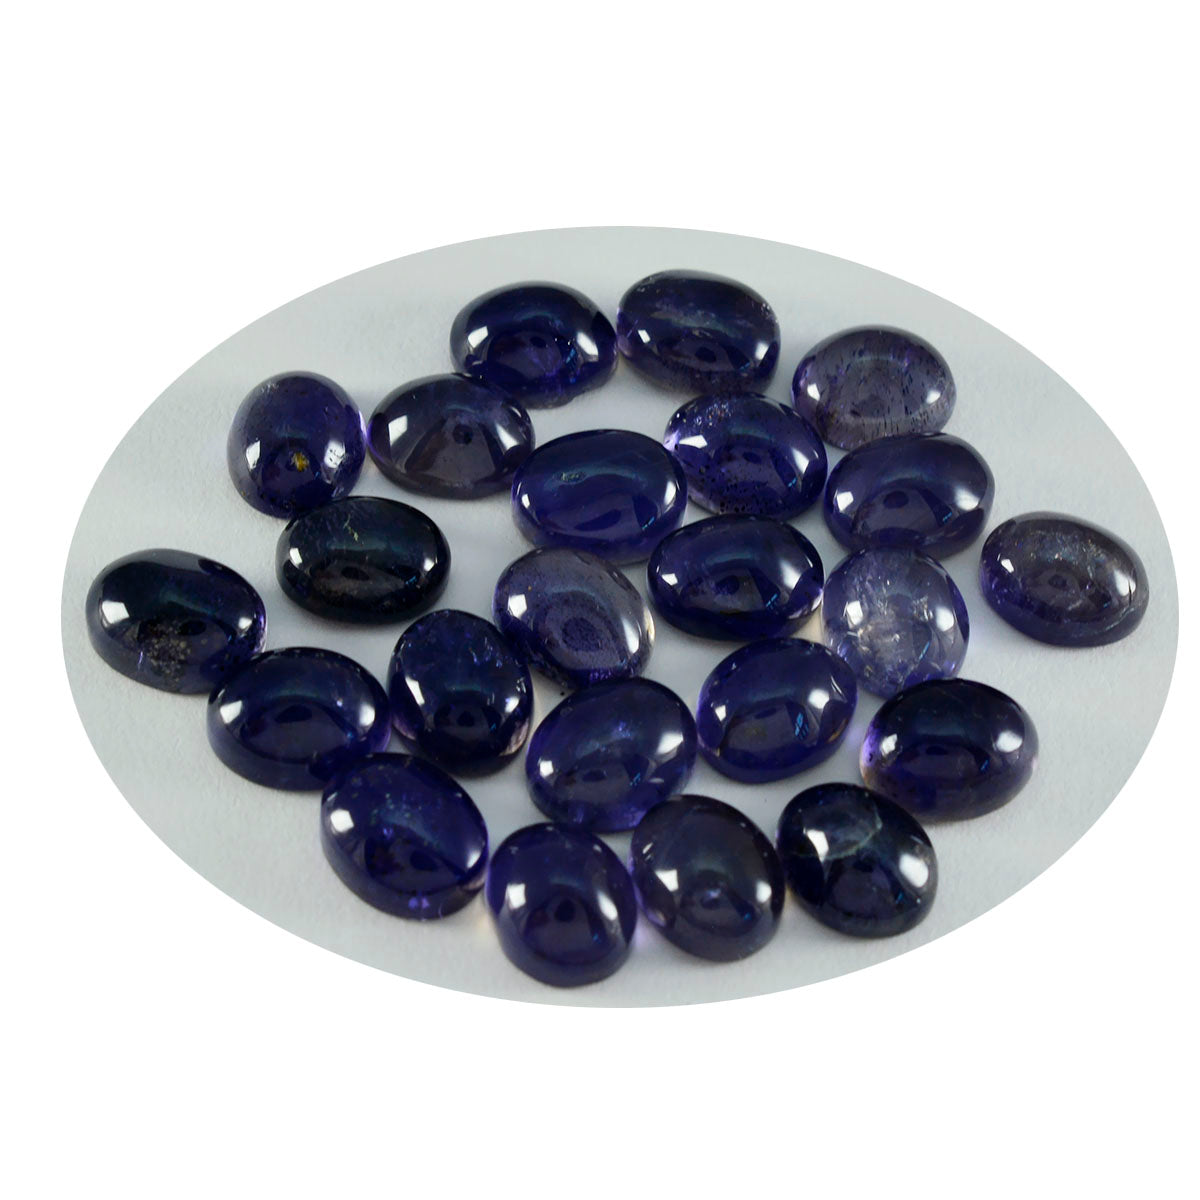 Riyogems 1 pc cabochon iolite bleu 9x11 mm forme ovale belle qualité pierres précieuses en vrac